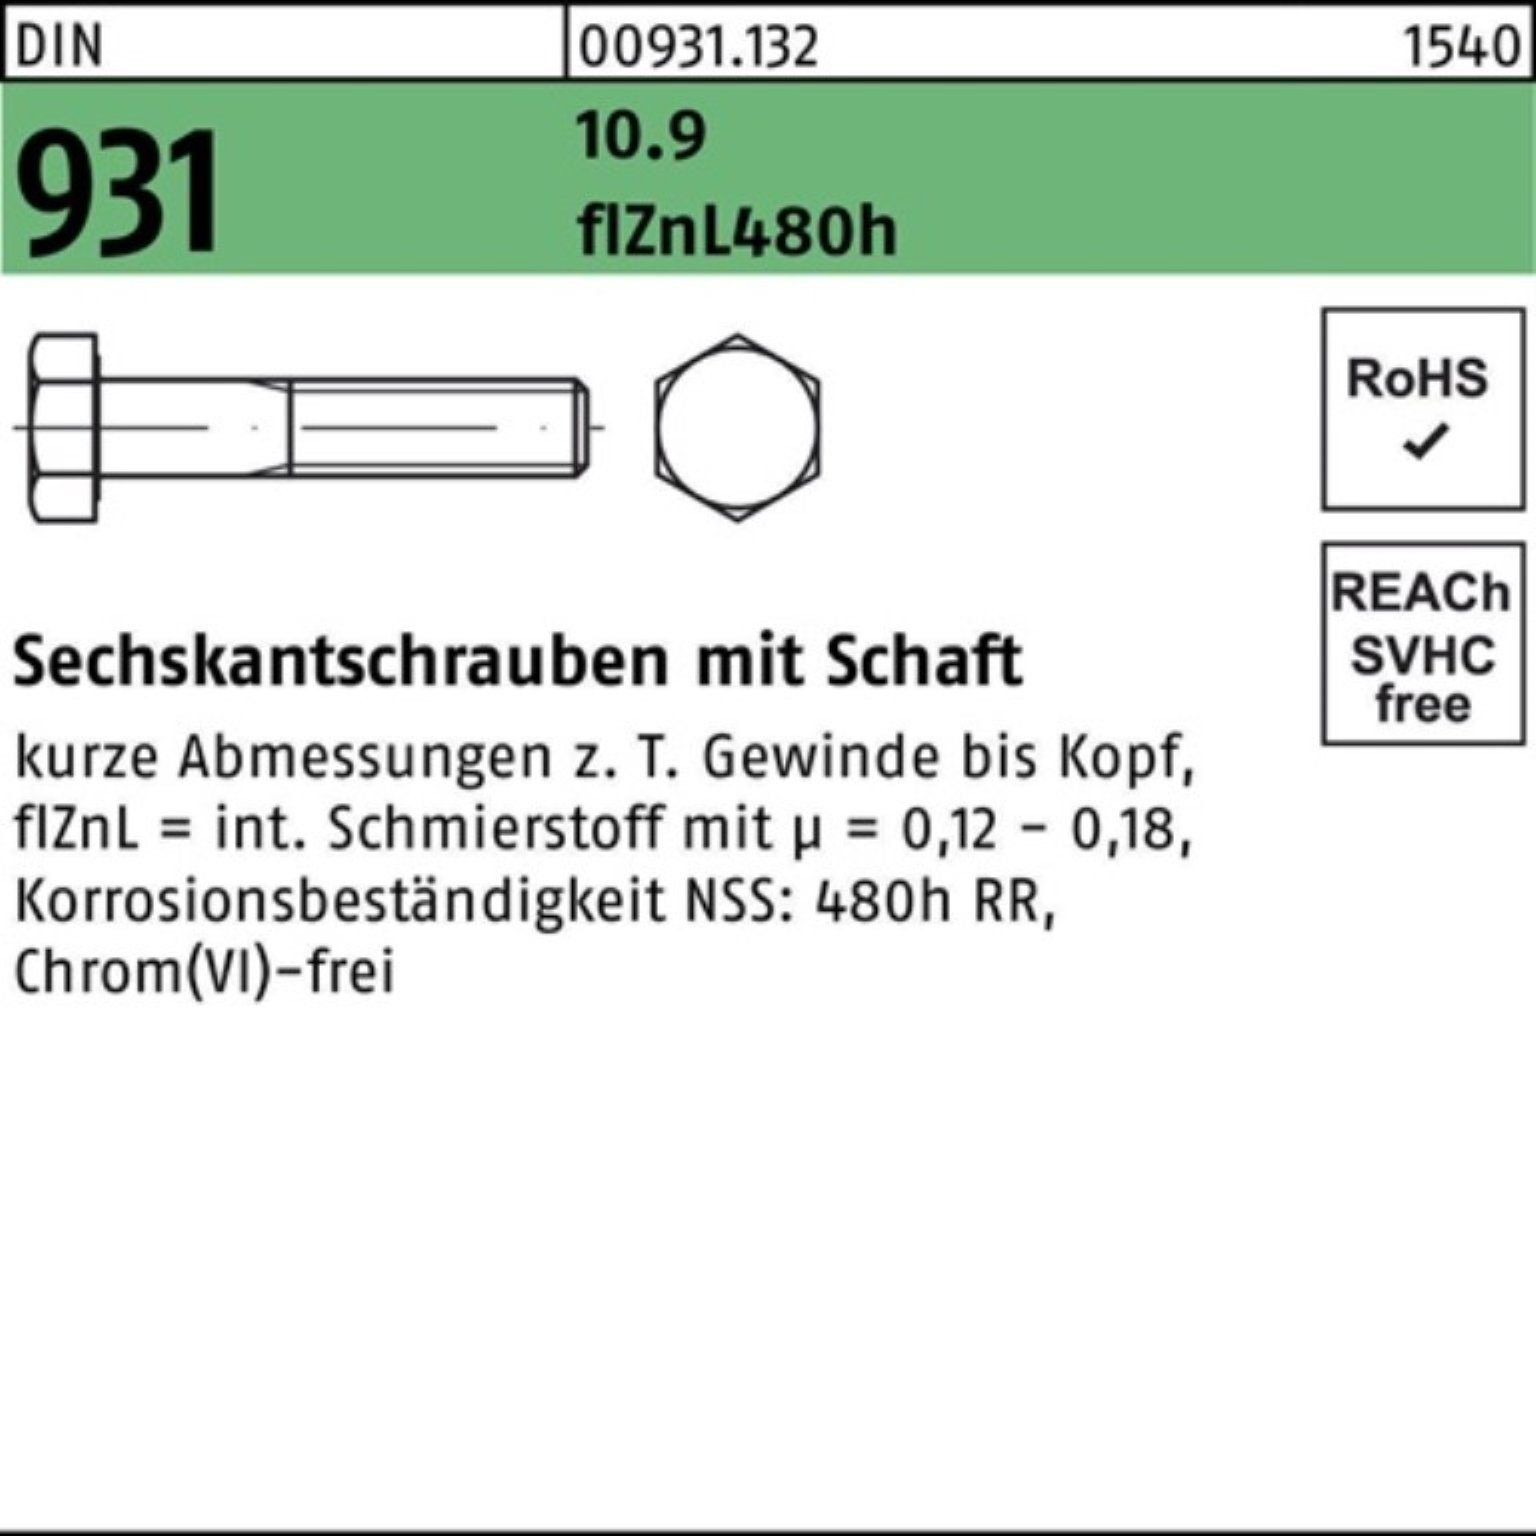 Reyher Sechskantschraube 200er Pack M6x Schaft 931 DIN Sechskantschraube flZnL/nc/x/x/4 55 10.9